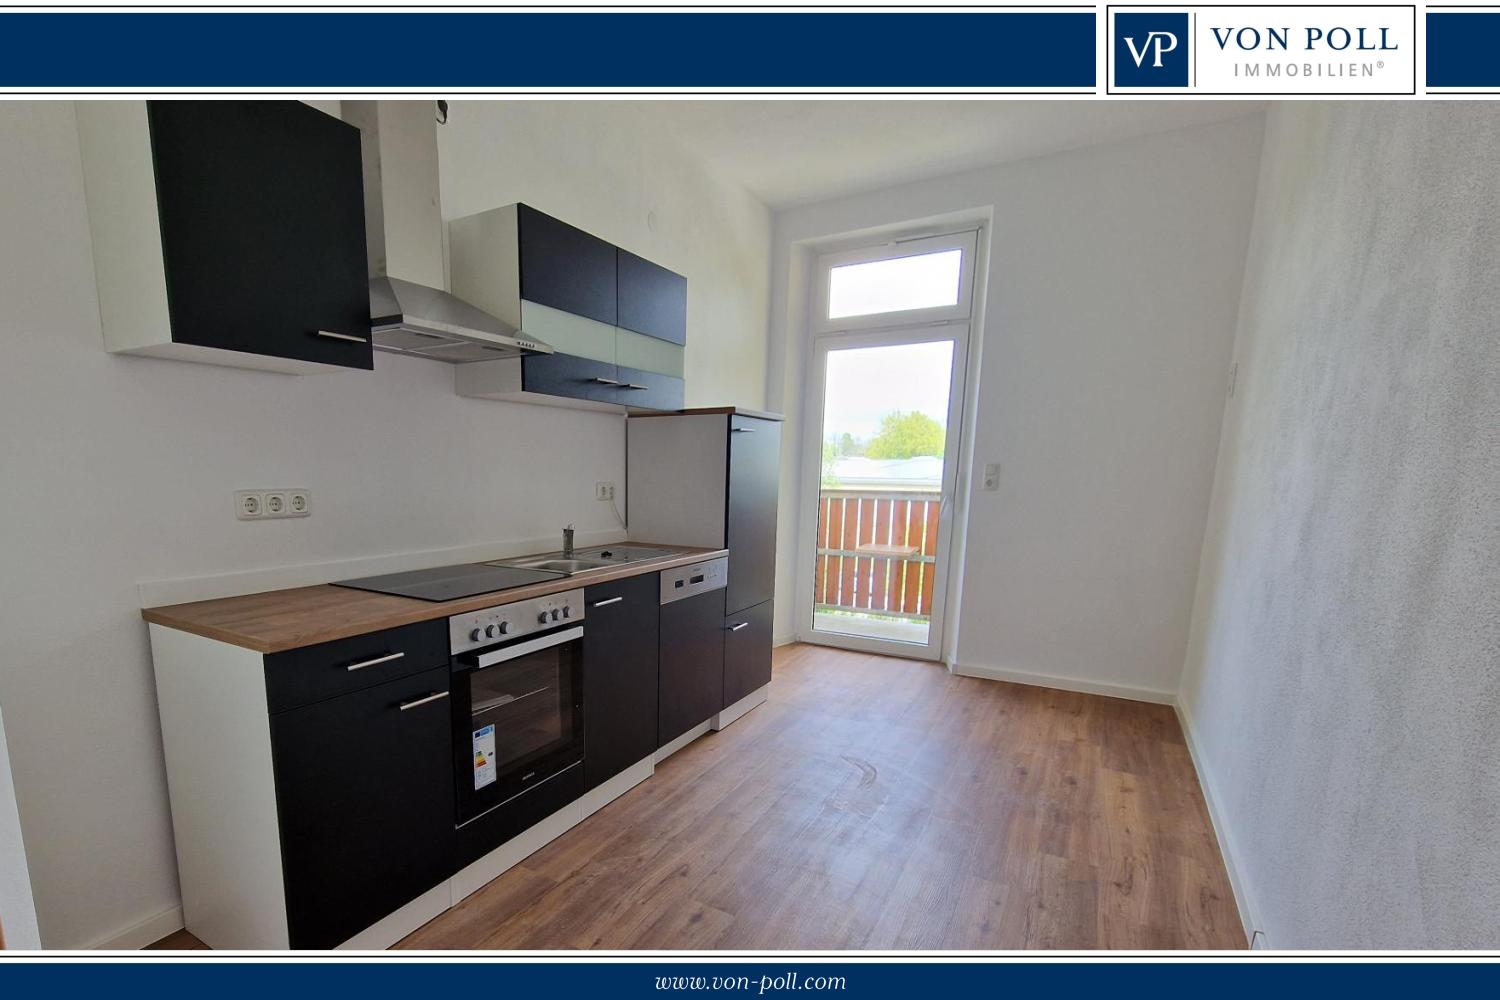 Sehr schöne 100 m²-Wohnung mit Einbauküche und zwei Balkonen!